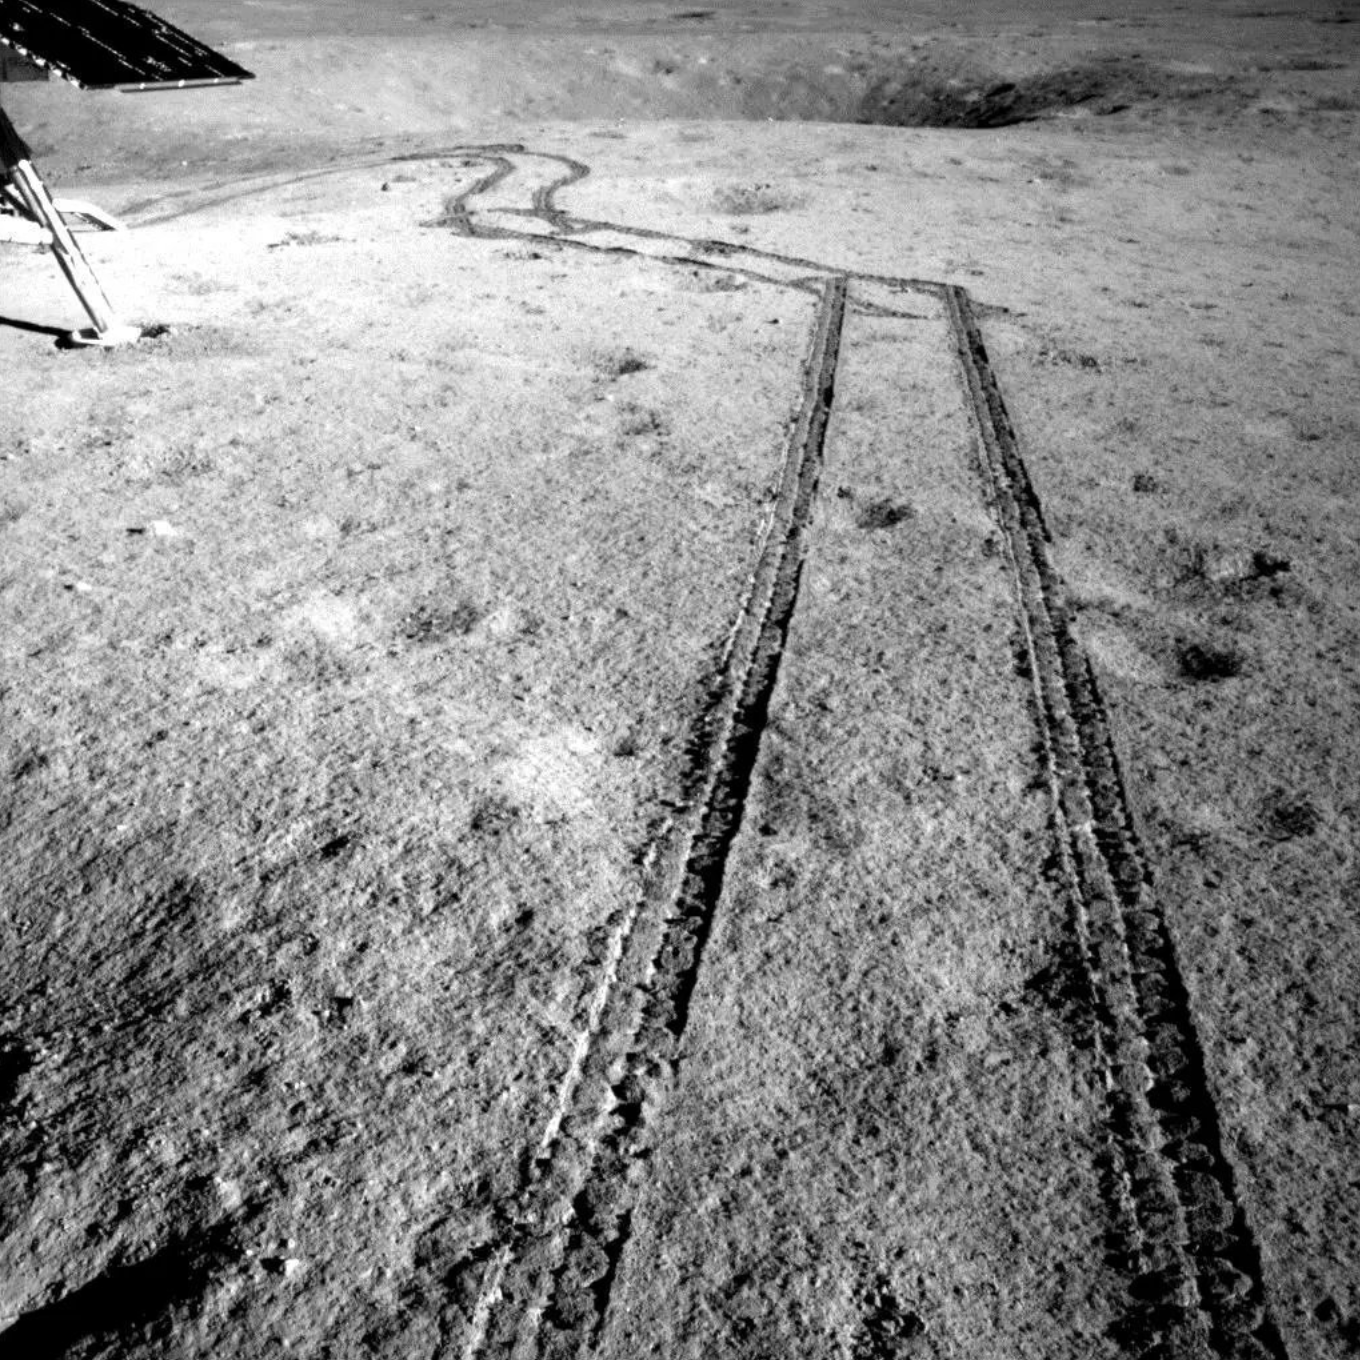 Следы от марсохода Юту-2 возле посадочной площадки. Кредит: CNSA